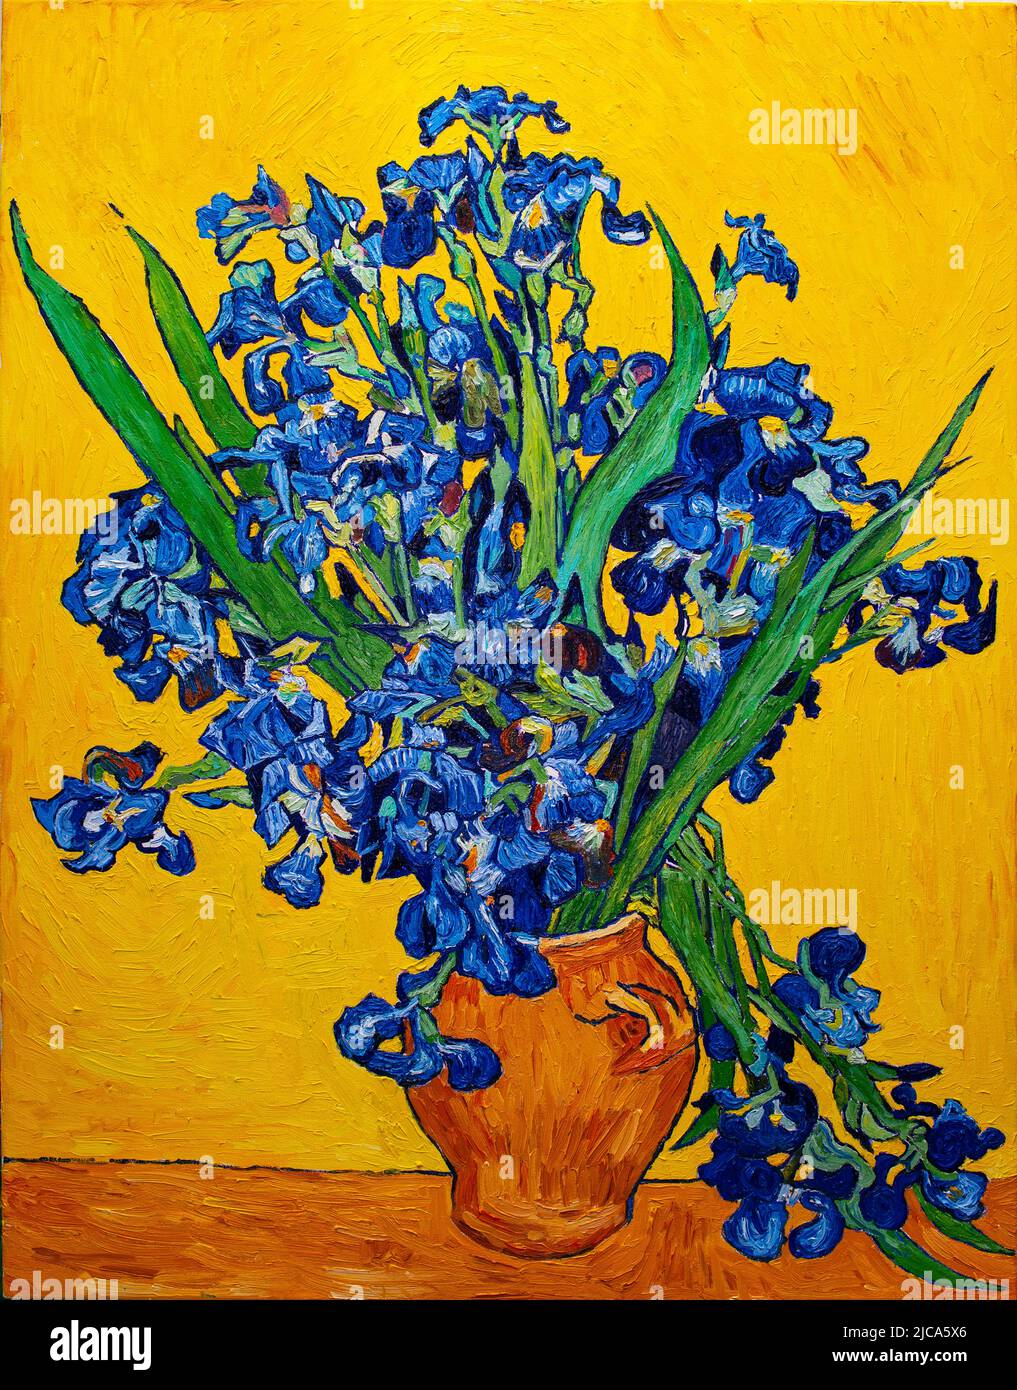 Peinture à l'huile sur toile. Vase avec iris sur fond jaune. Copie gratuite basée sur la célèbre peinture de Vincent Van Gogh. Banque D'Images